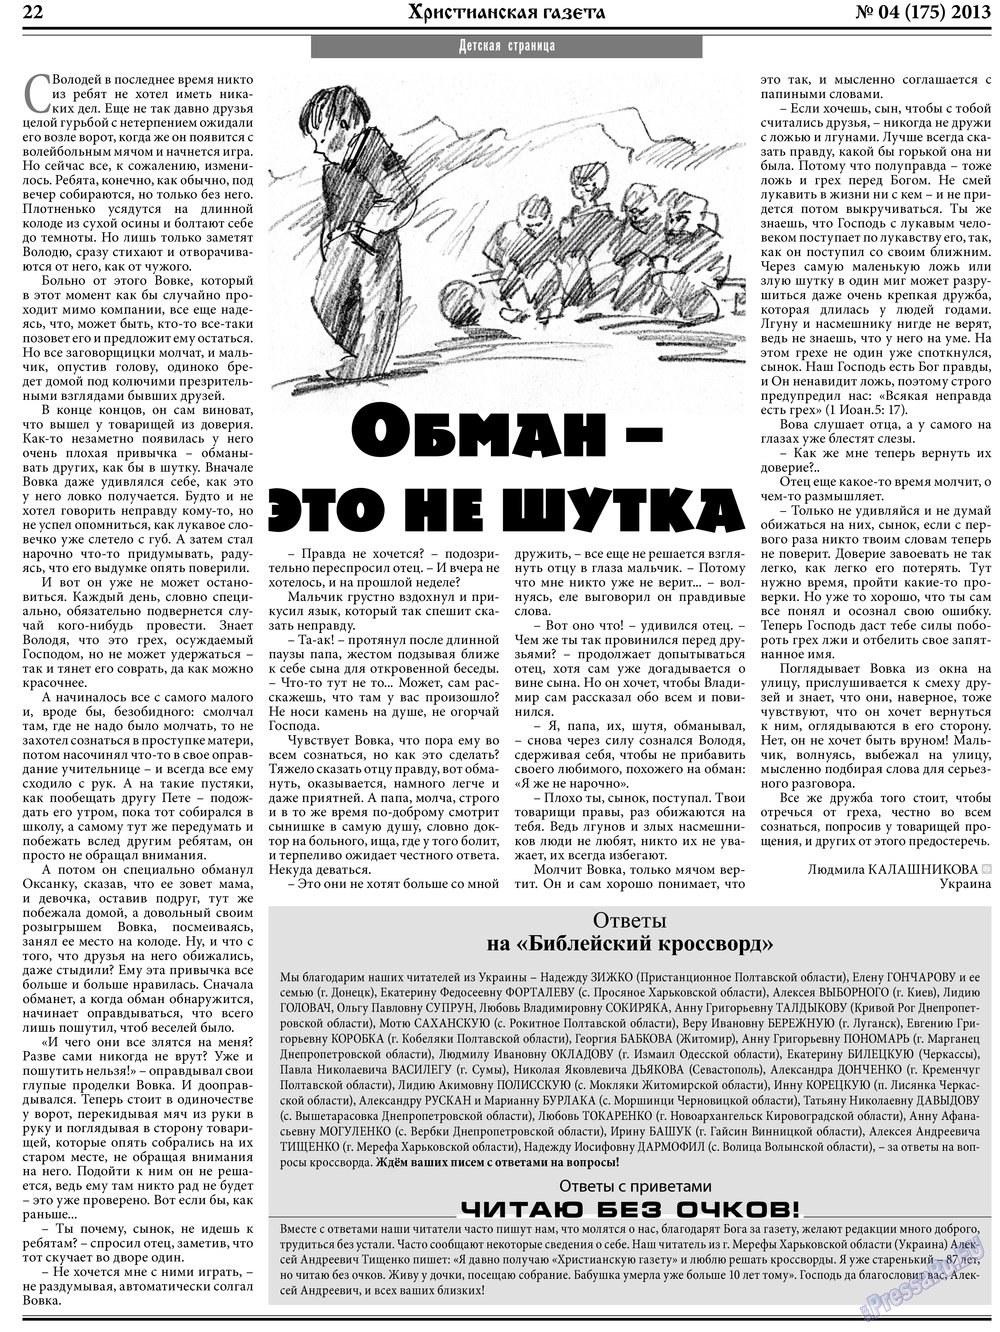 Христианская газета, газета. 2013 №4 стр.30